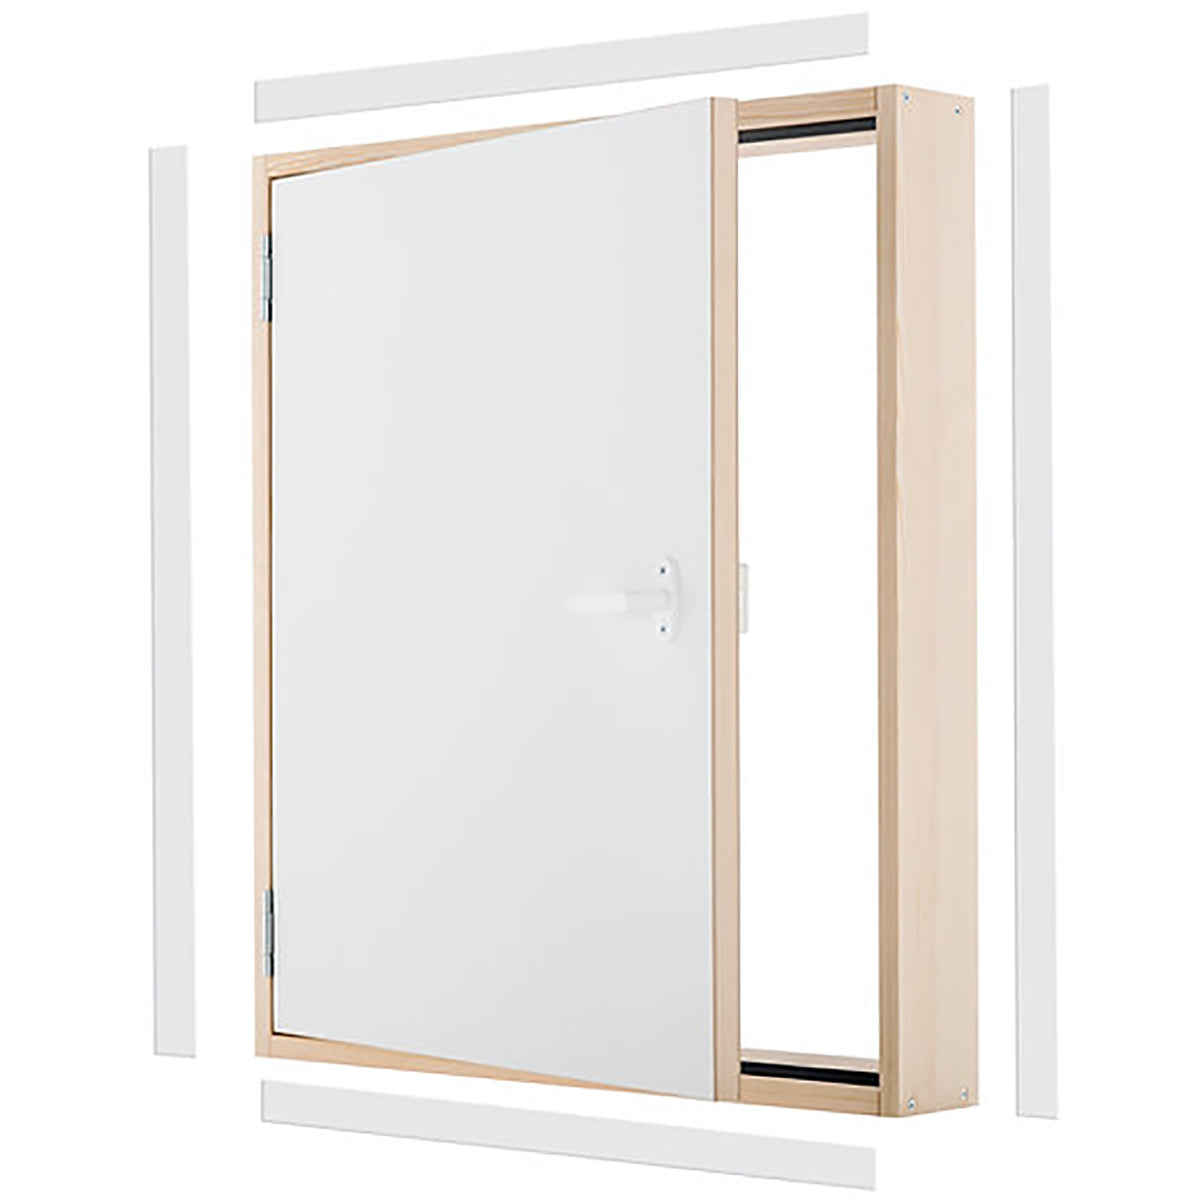 DK TERMO - Panel de puerta de acceso con aislamiento de madera - 31.5 in. x 27.5 in.